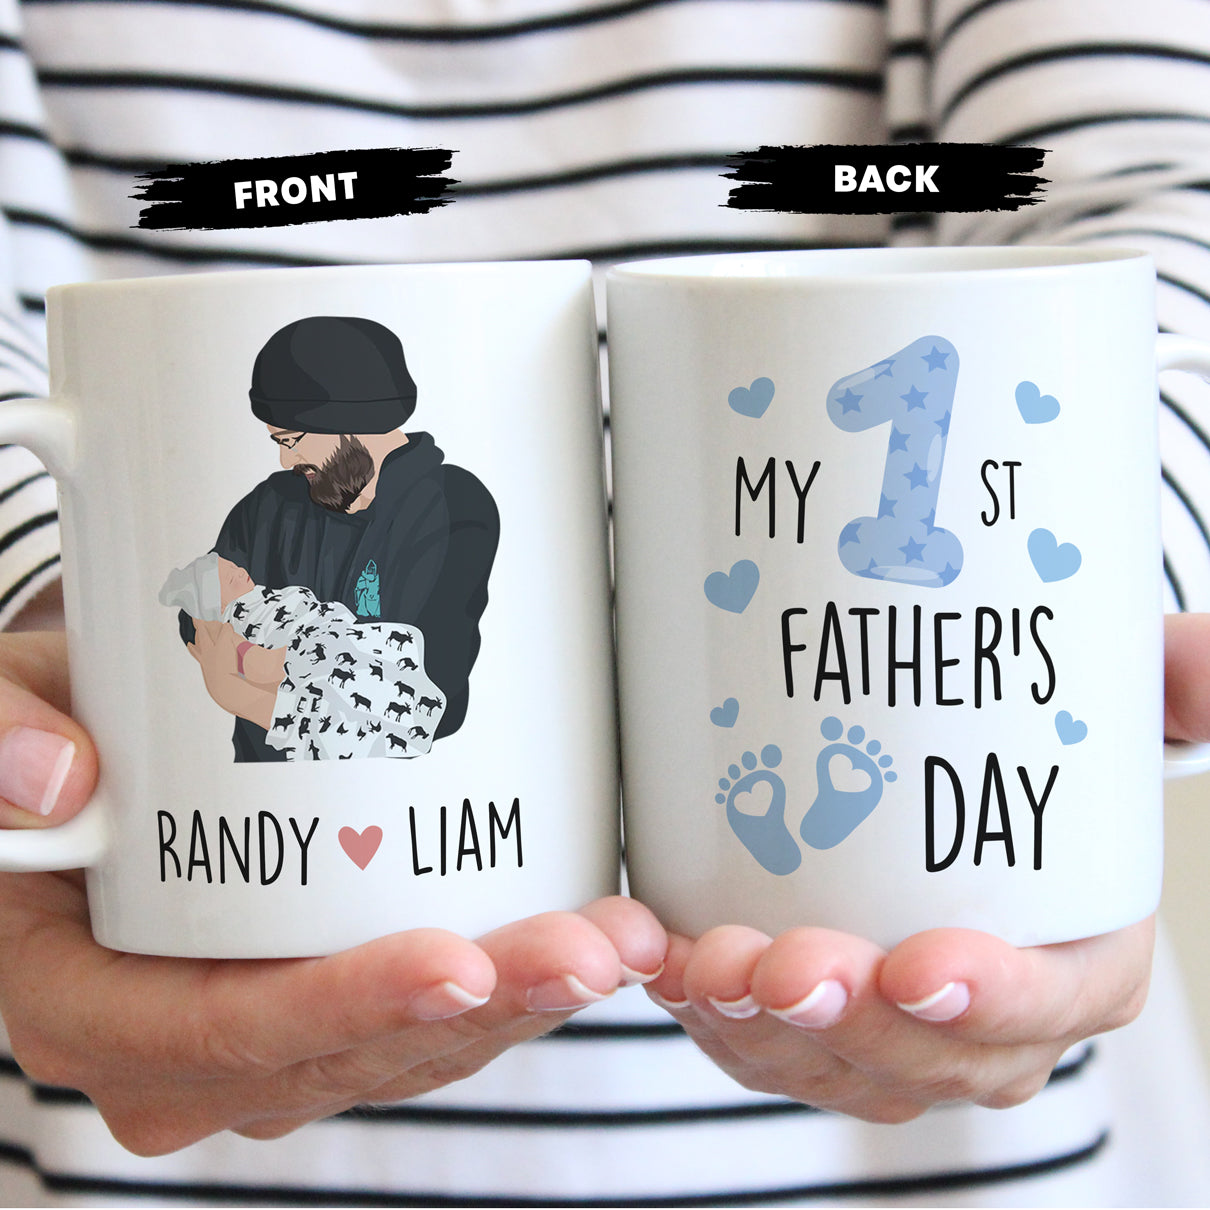 Personalized Mugs - Personalized 1st Fathers Day Mug 